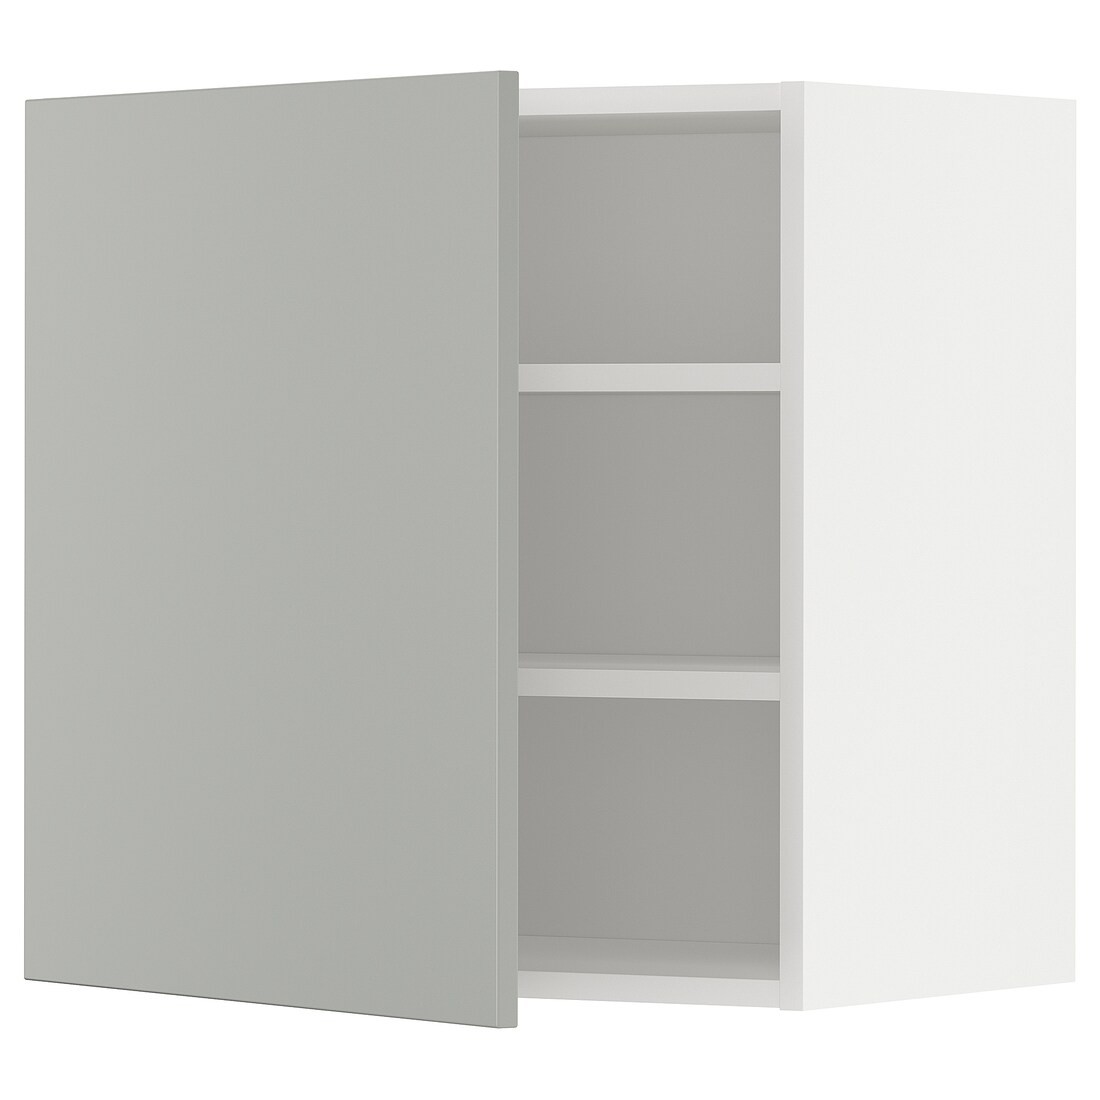 METOD Шкаф навесной с полками, белый / Хавсторп светло-серый, 60x60 см